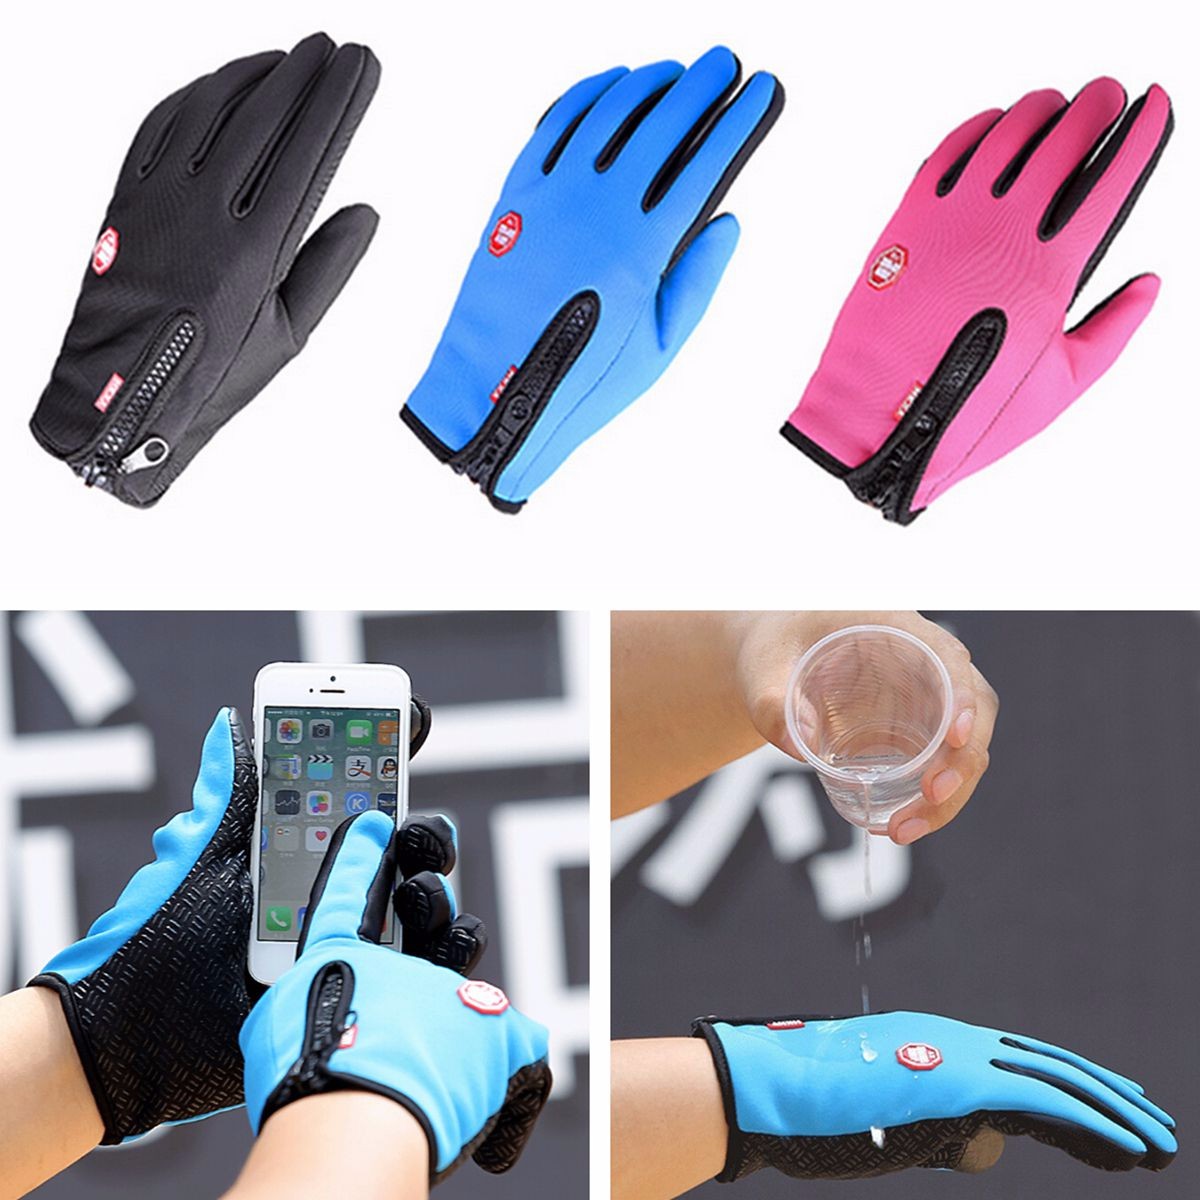 

Спортивные перчатки для использования со смартфоном зимой